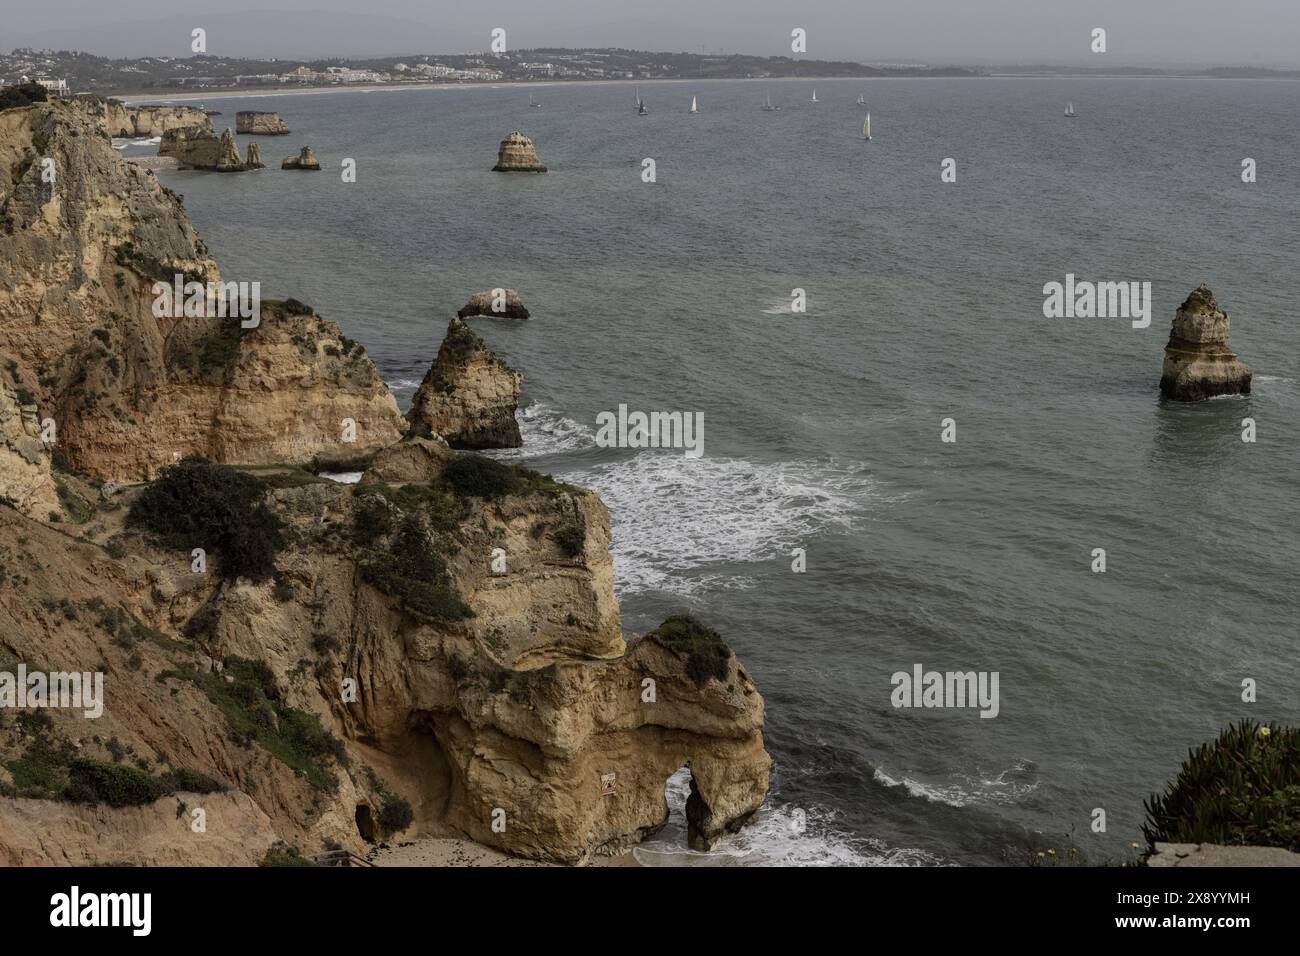 Malerischer Blick auf die felsigen Klippen und Meeresberge am Strand von Camilo in Portugal. Die zerklüftete Küste bietet dramatische Felsformationen und einen Sandstrand. Stockfoto